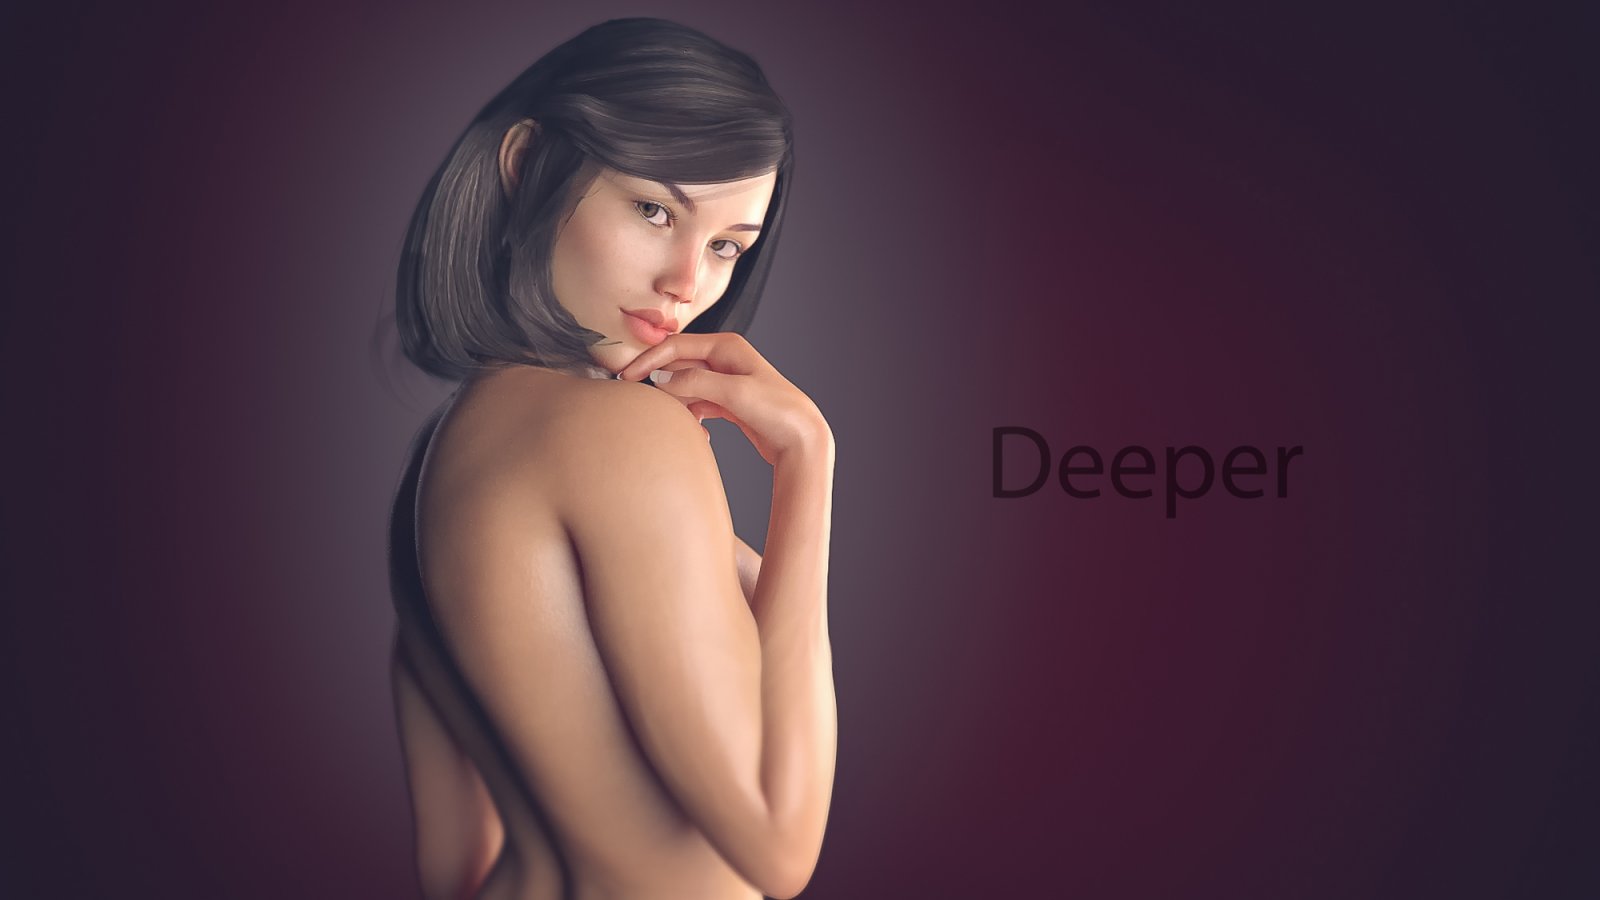 Free download erotic game sex free video